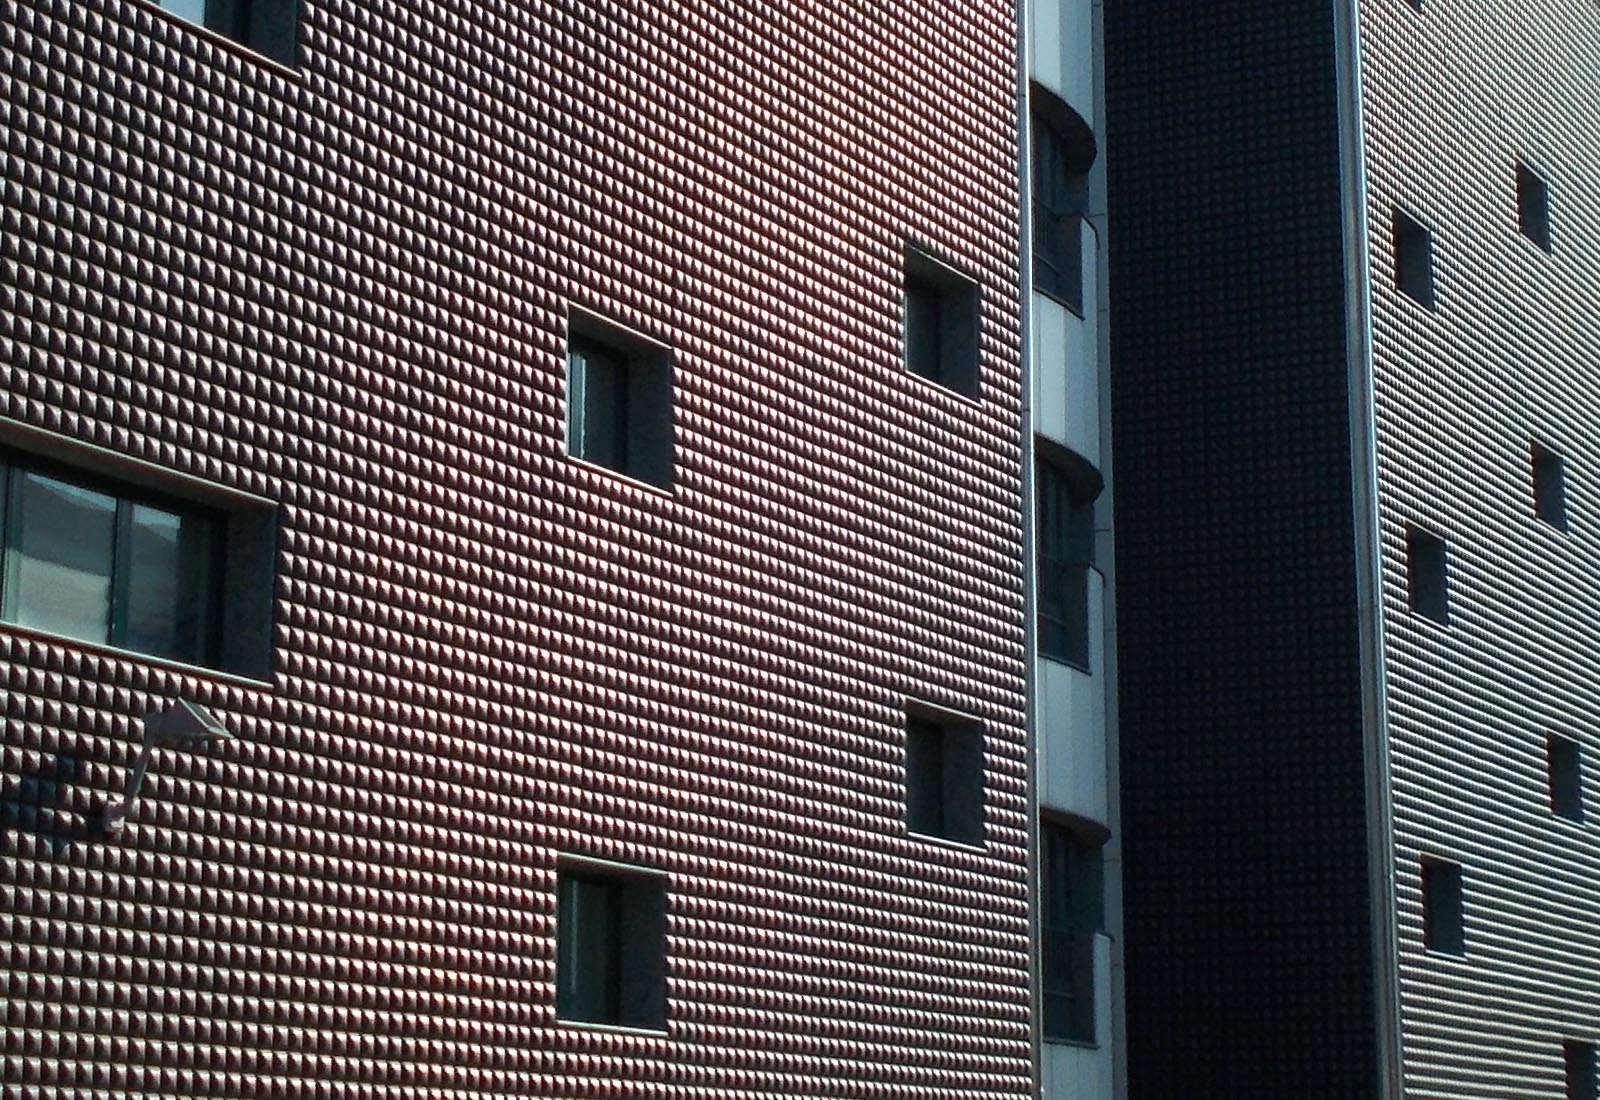 Building 22 Politecnico di Milano - The south facade